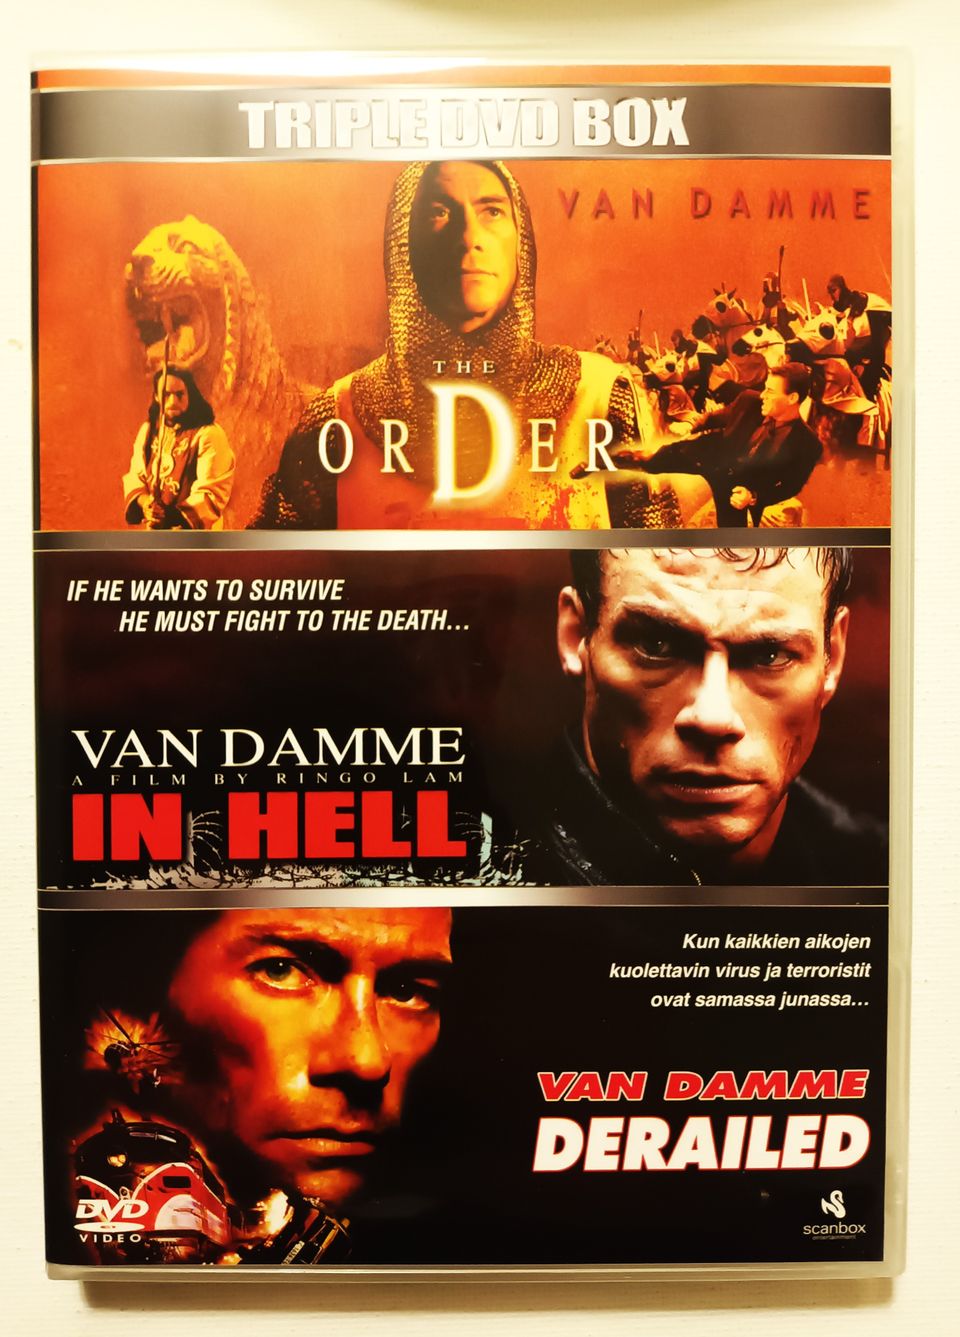 Van Damme Triple DVD Box